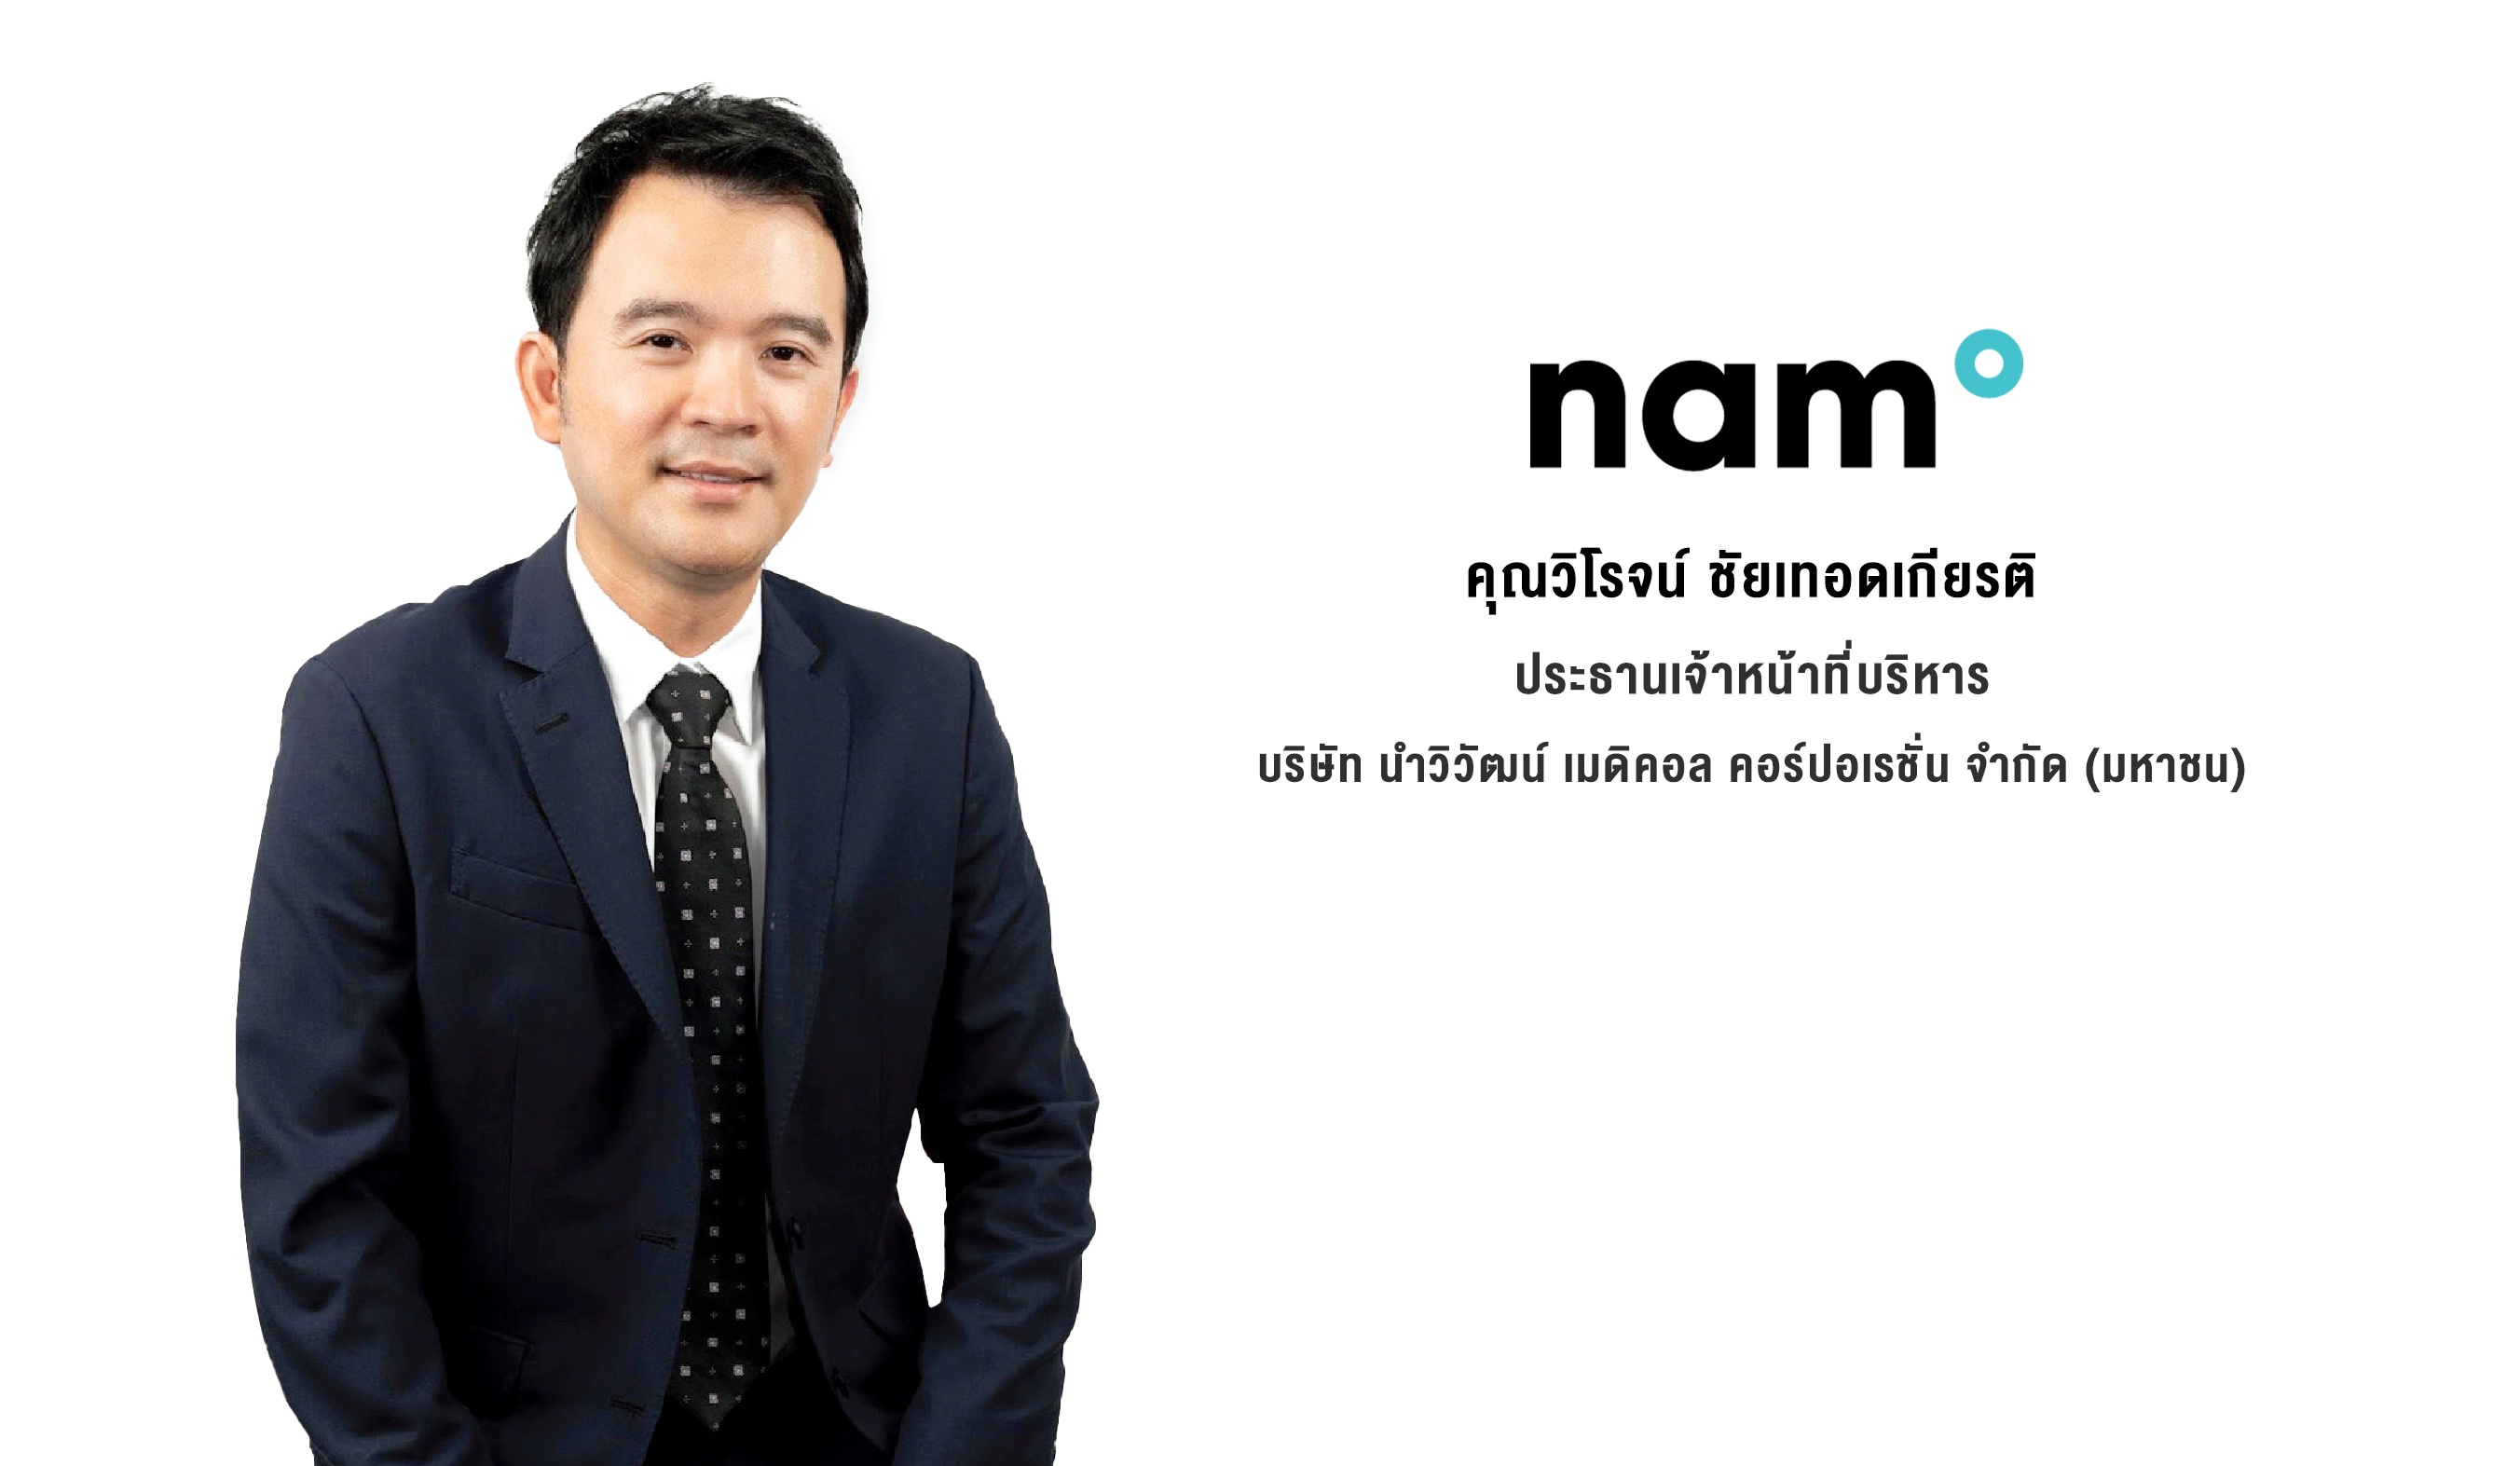 NAM เผยยอดจองซื้อ IPO ล้น เตรียมพร้อมเข้าเทรดใน SET วันที่ 31 ตุลาคมนี้